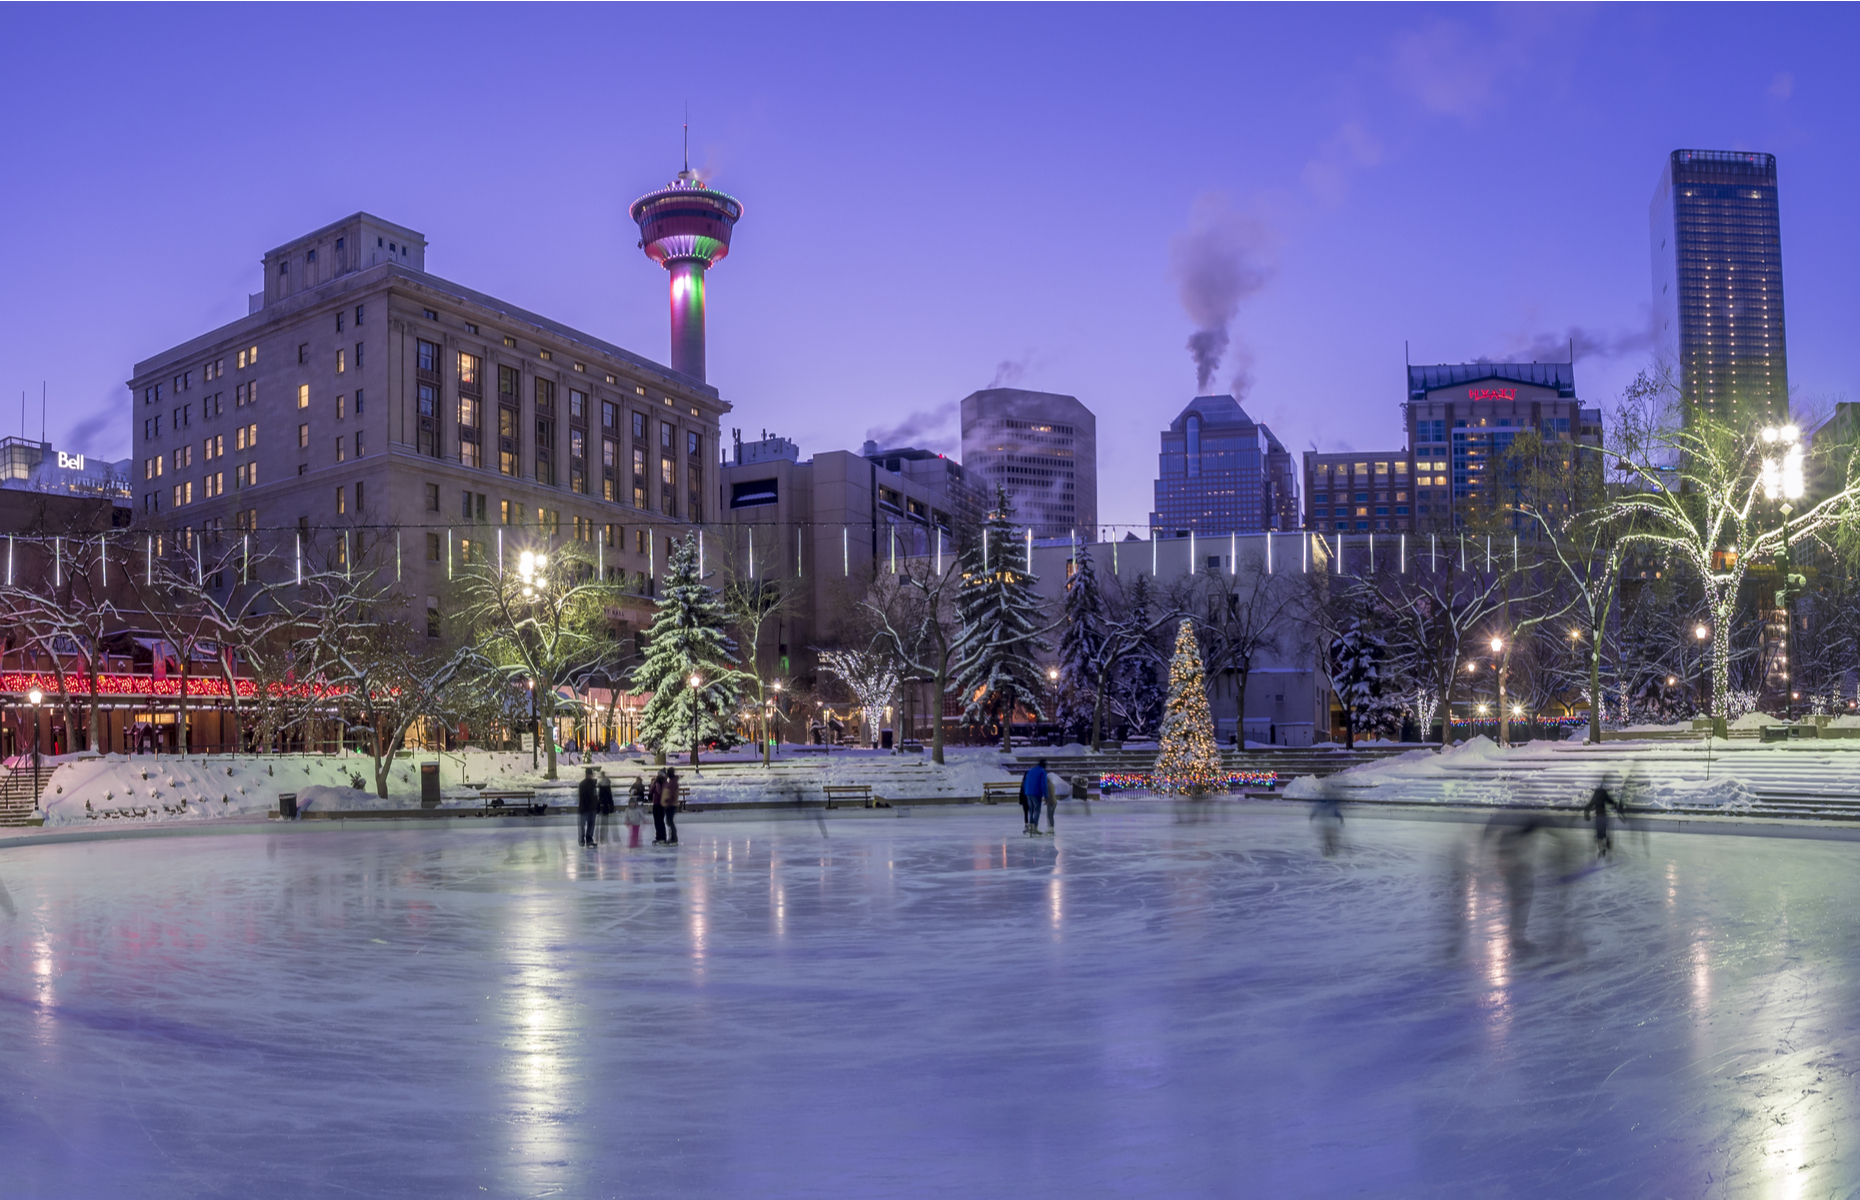 Ice skating rink at Olympic Plaza, Calgary